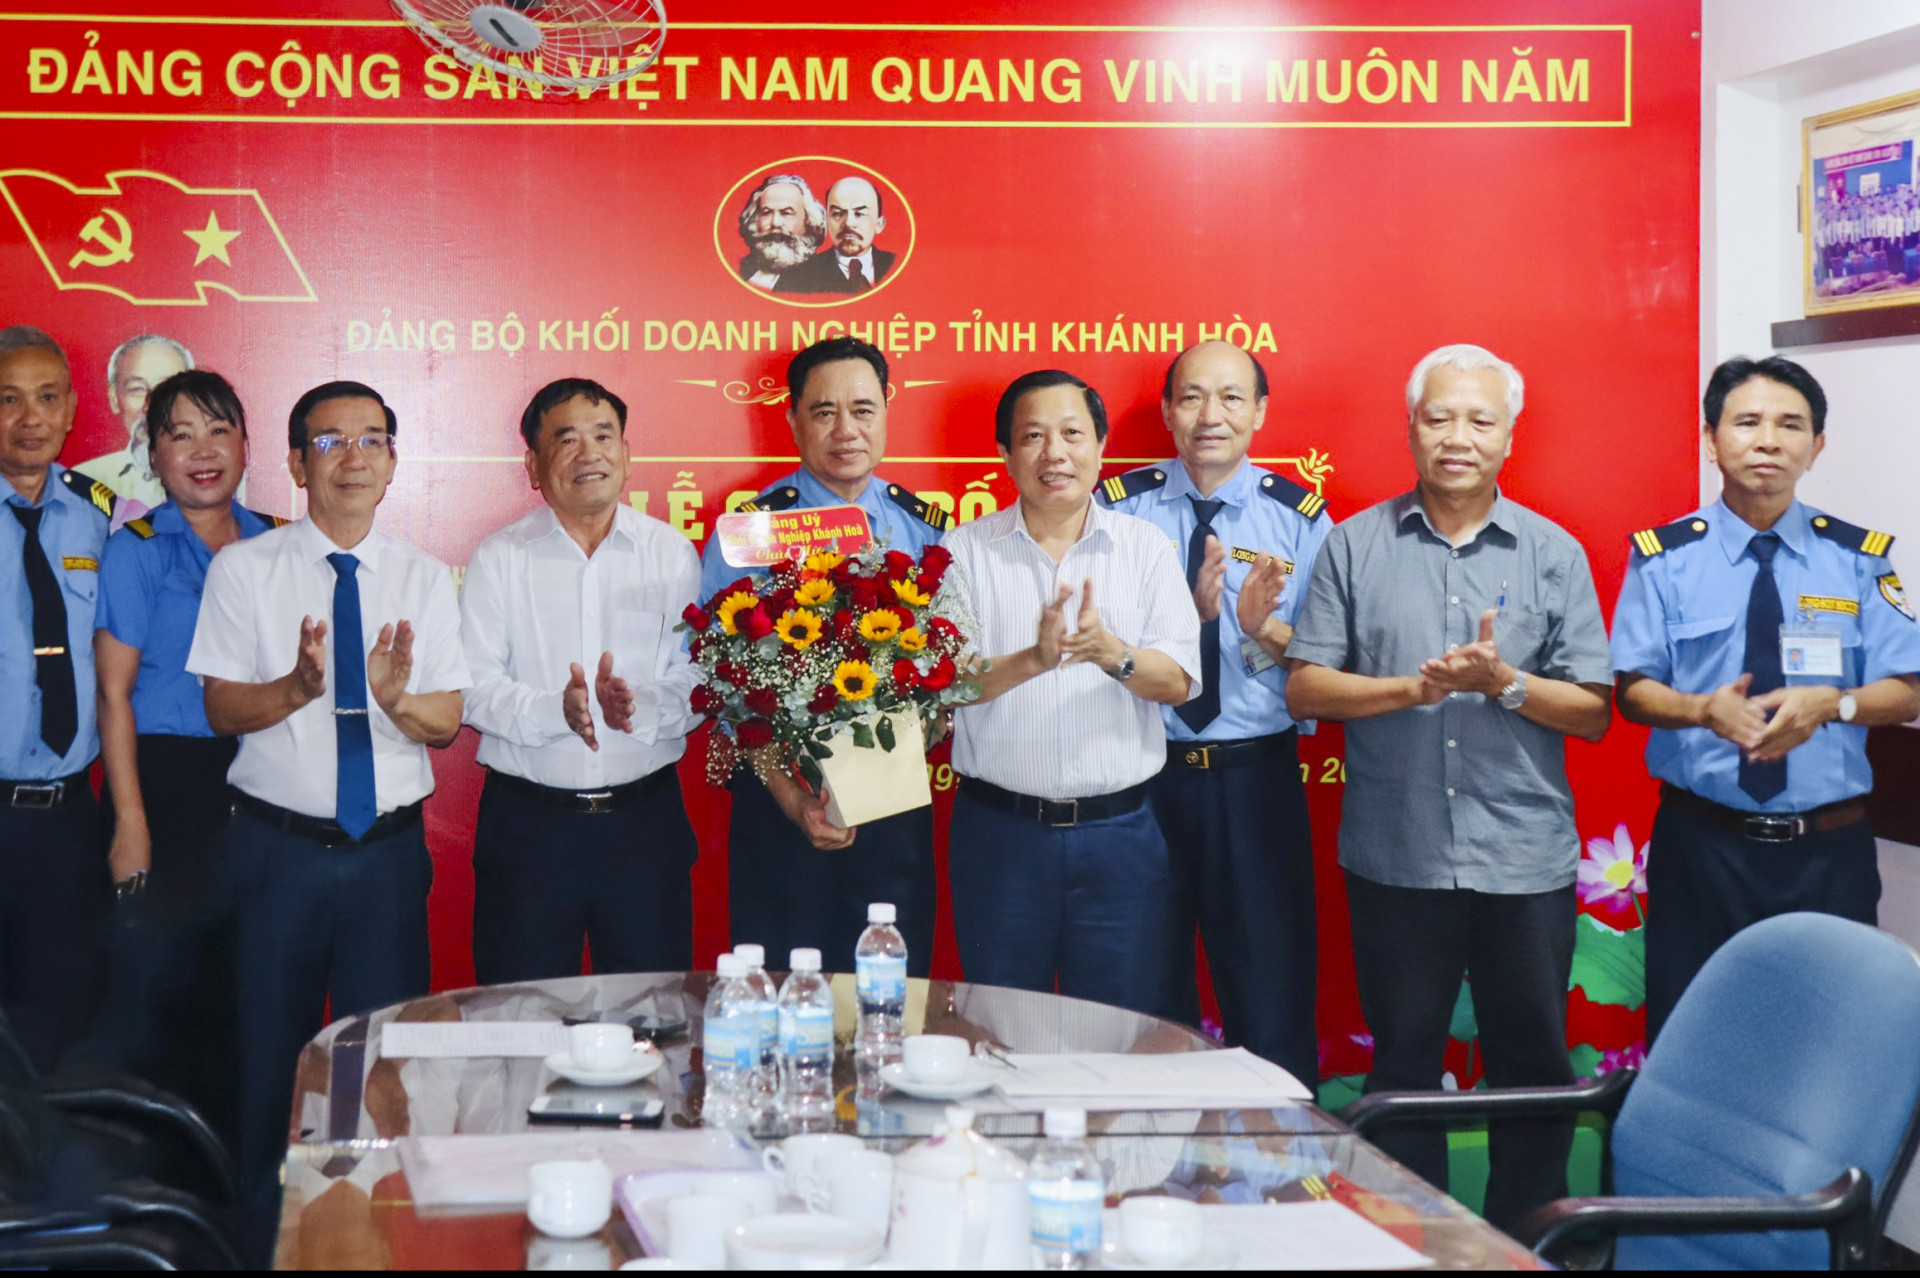 
Phó Bí thư Tỉnh ủy Hà Quốc Trị và ông Nguyễn Thế Sinh trao quyết định thành lập Chi bộ Công ty Cổ phần Dịch vụ Bảo vệ Long Sơn